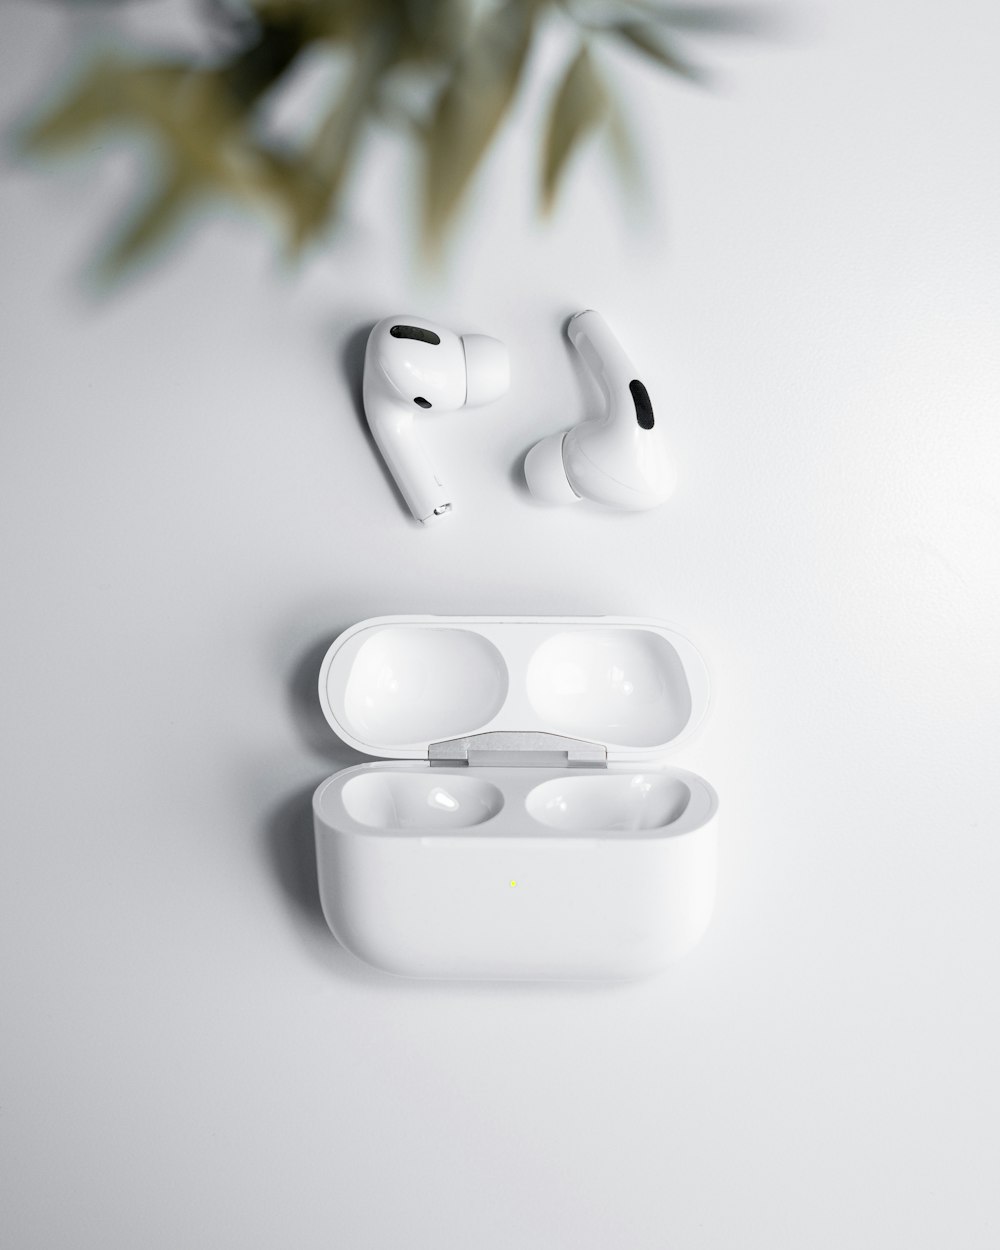 Un par de auriculares blancos sentados encima de una mesa